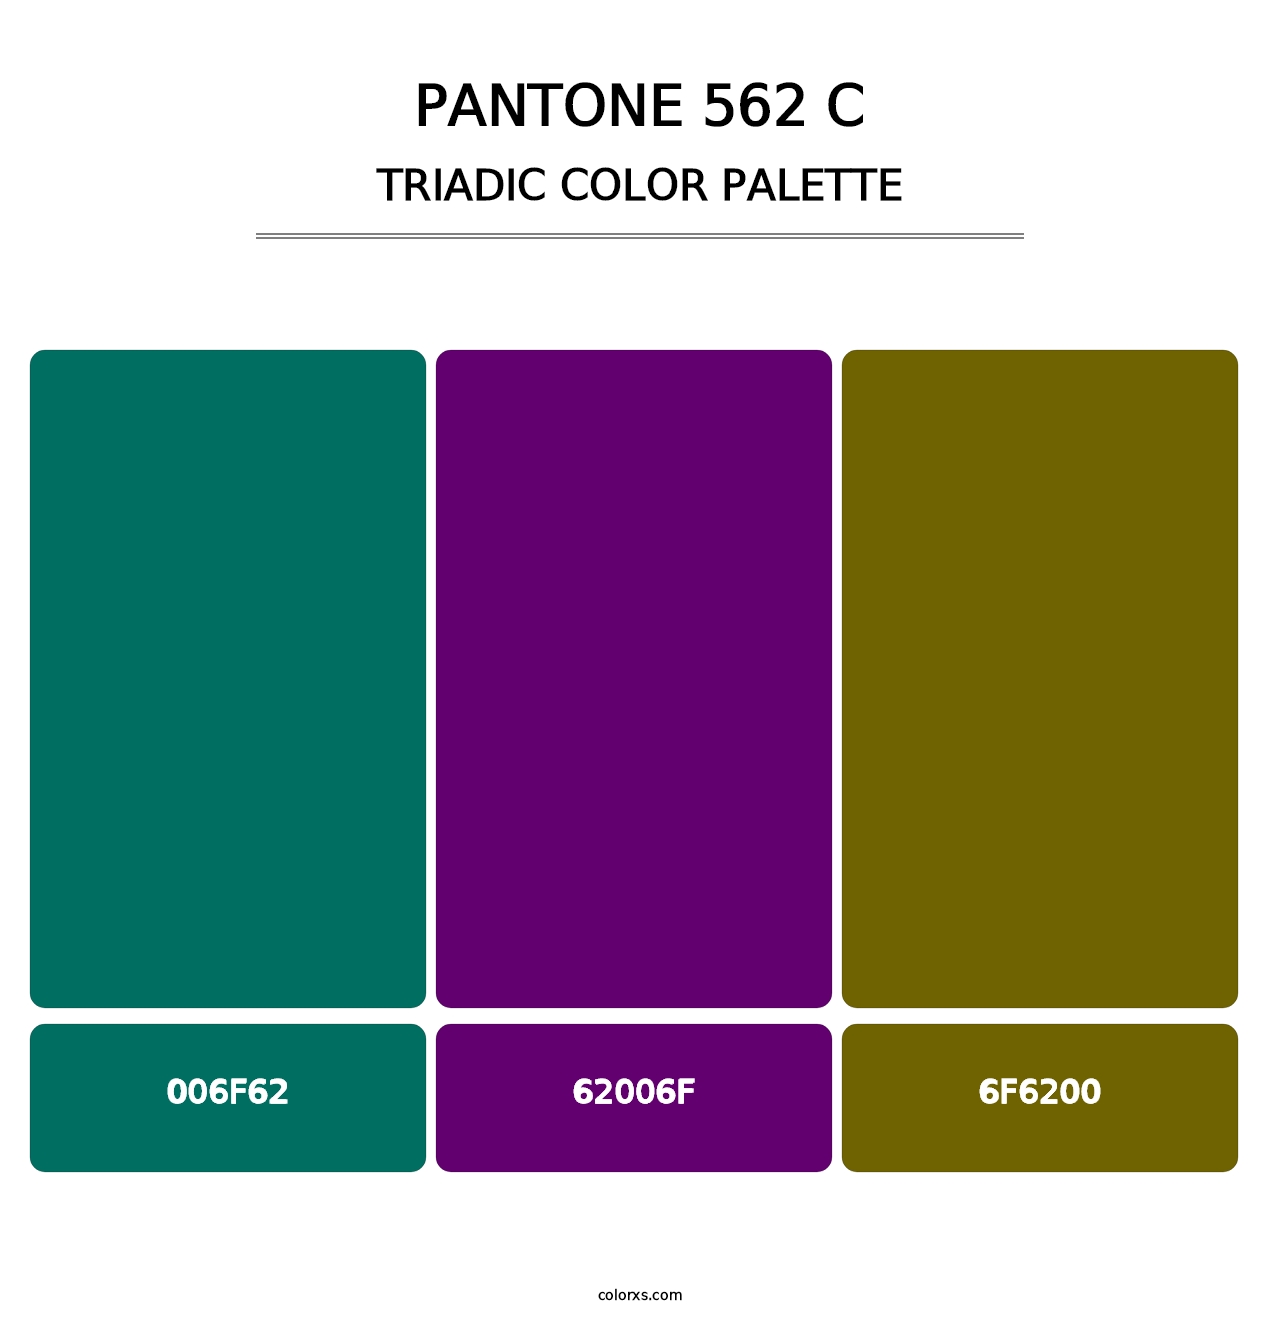 PANTONE 562 C - Triadic Color Palette